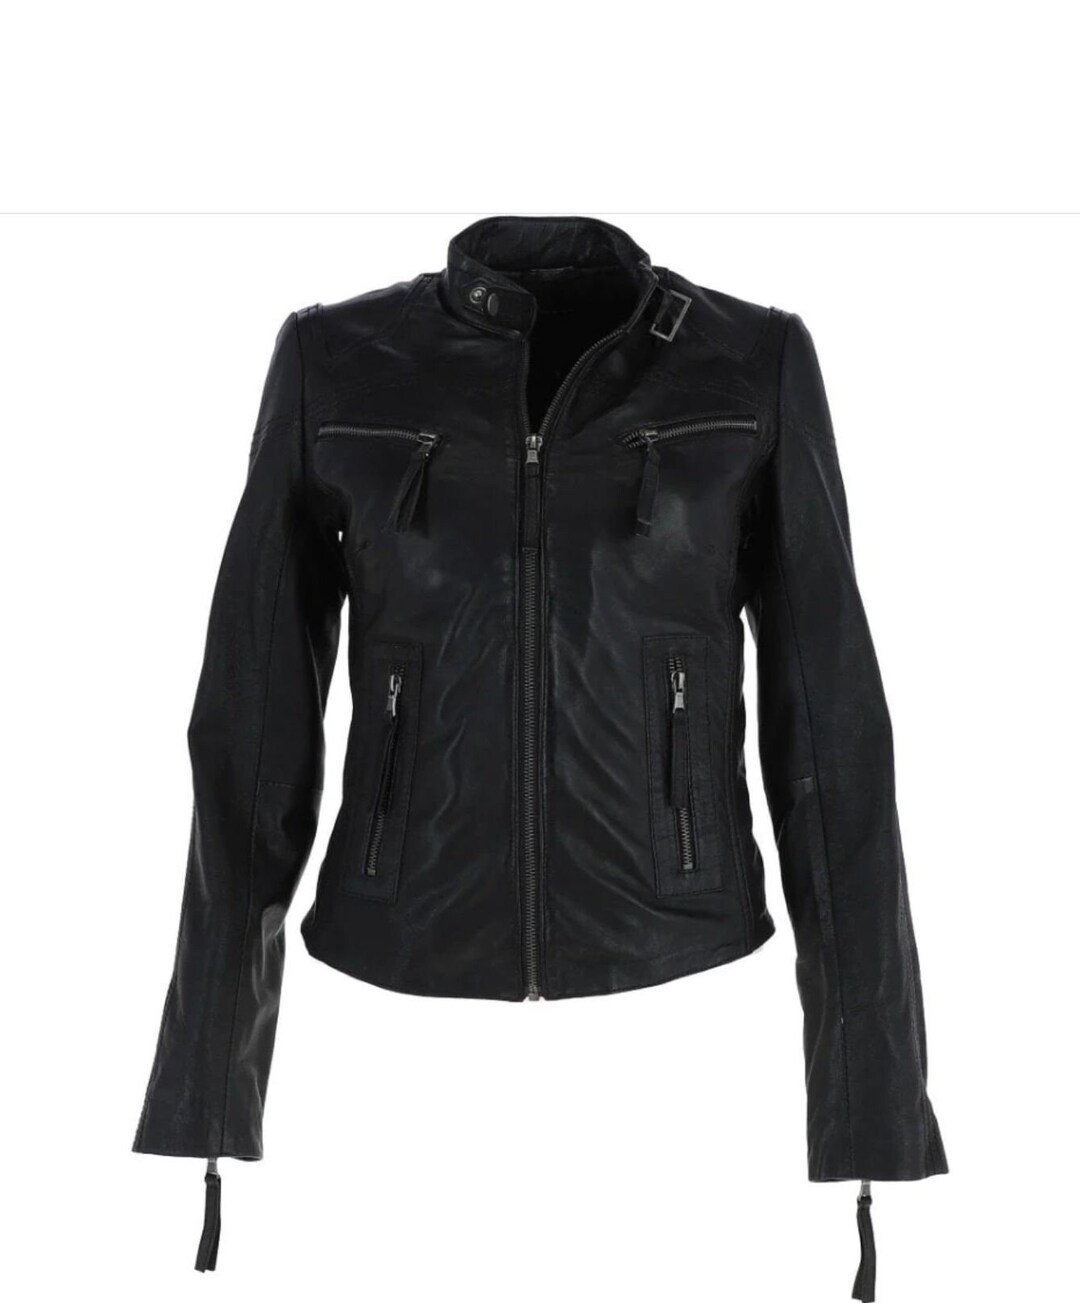 Women's Black Leather Jacket Racer Jacket Leather - Etsy